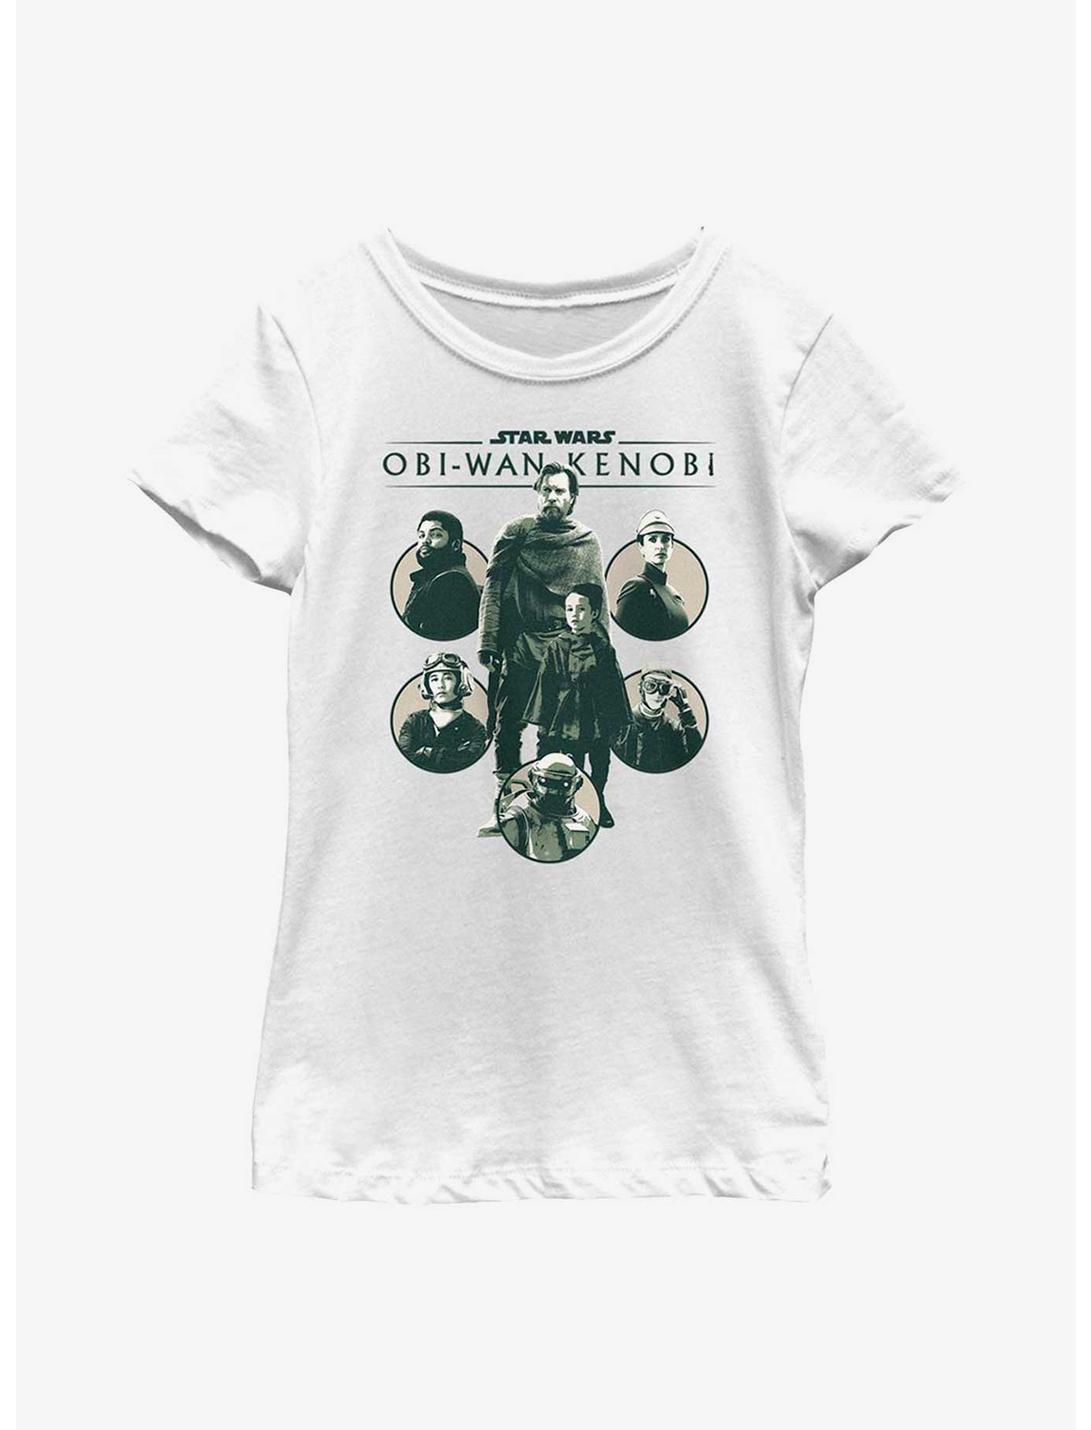 Star Wars Obi-Wan Kenobi Rebel Alliances Youth Girls T-Shirt, WHITE, hi-res